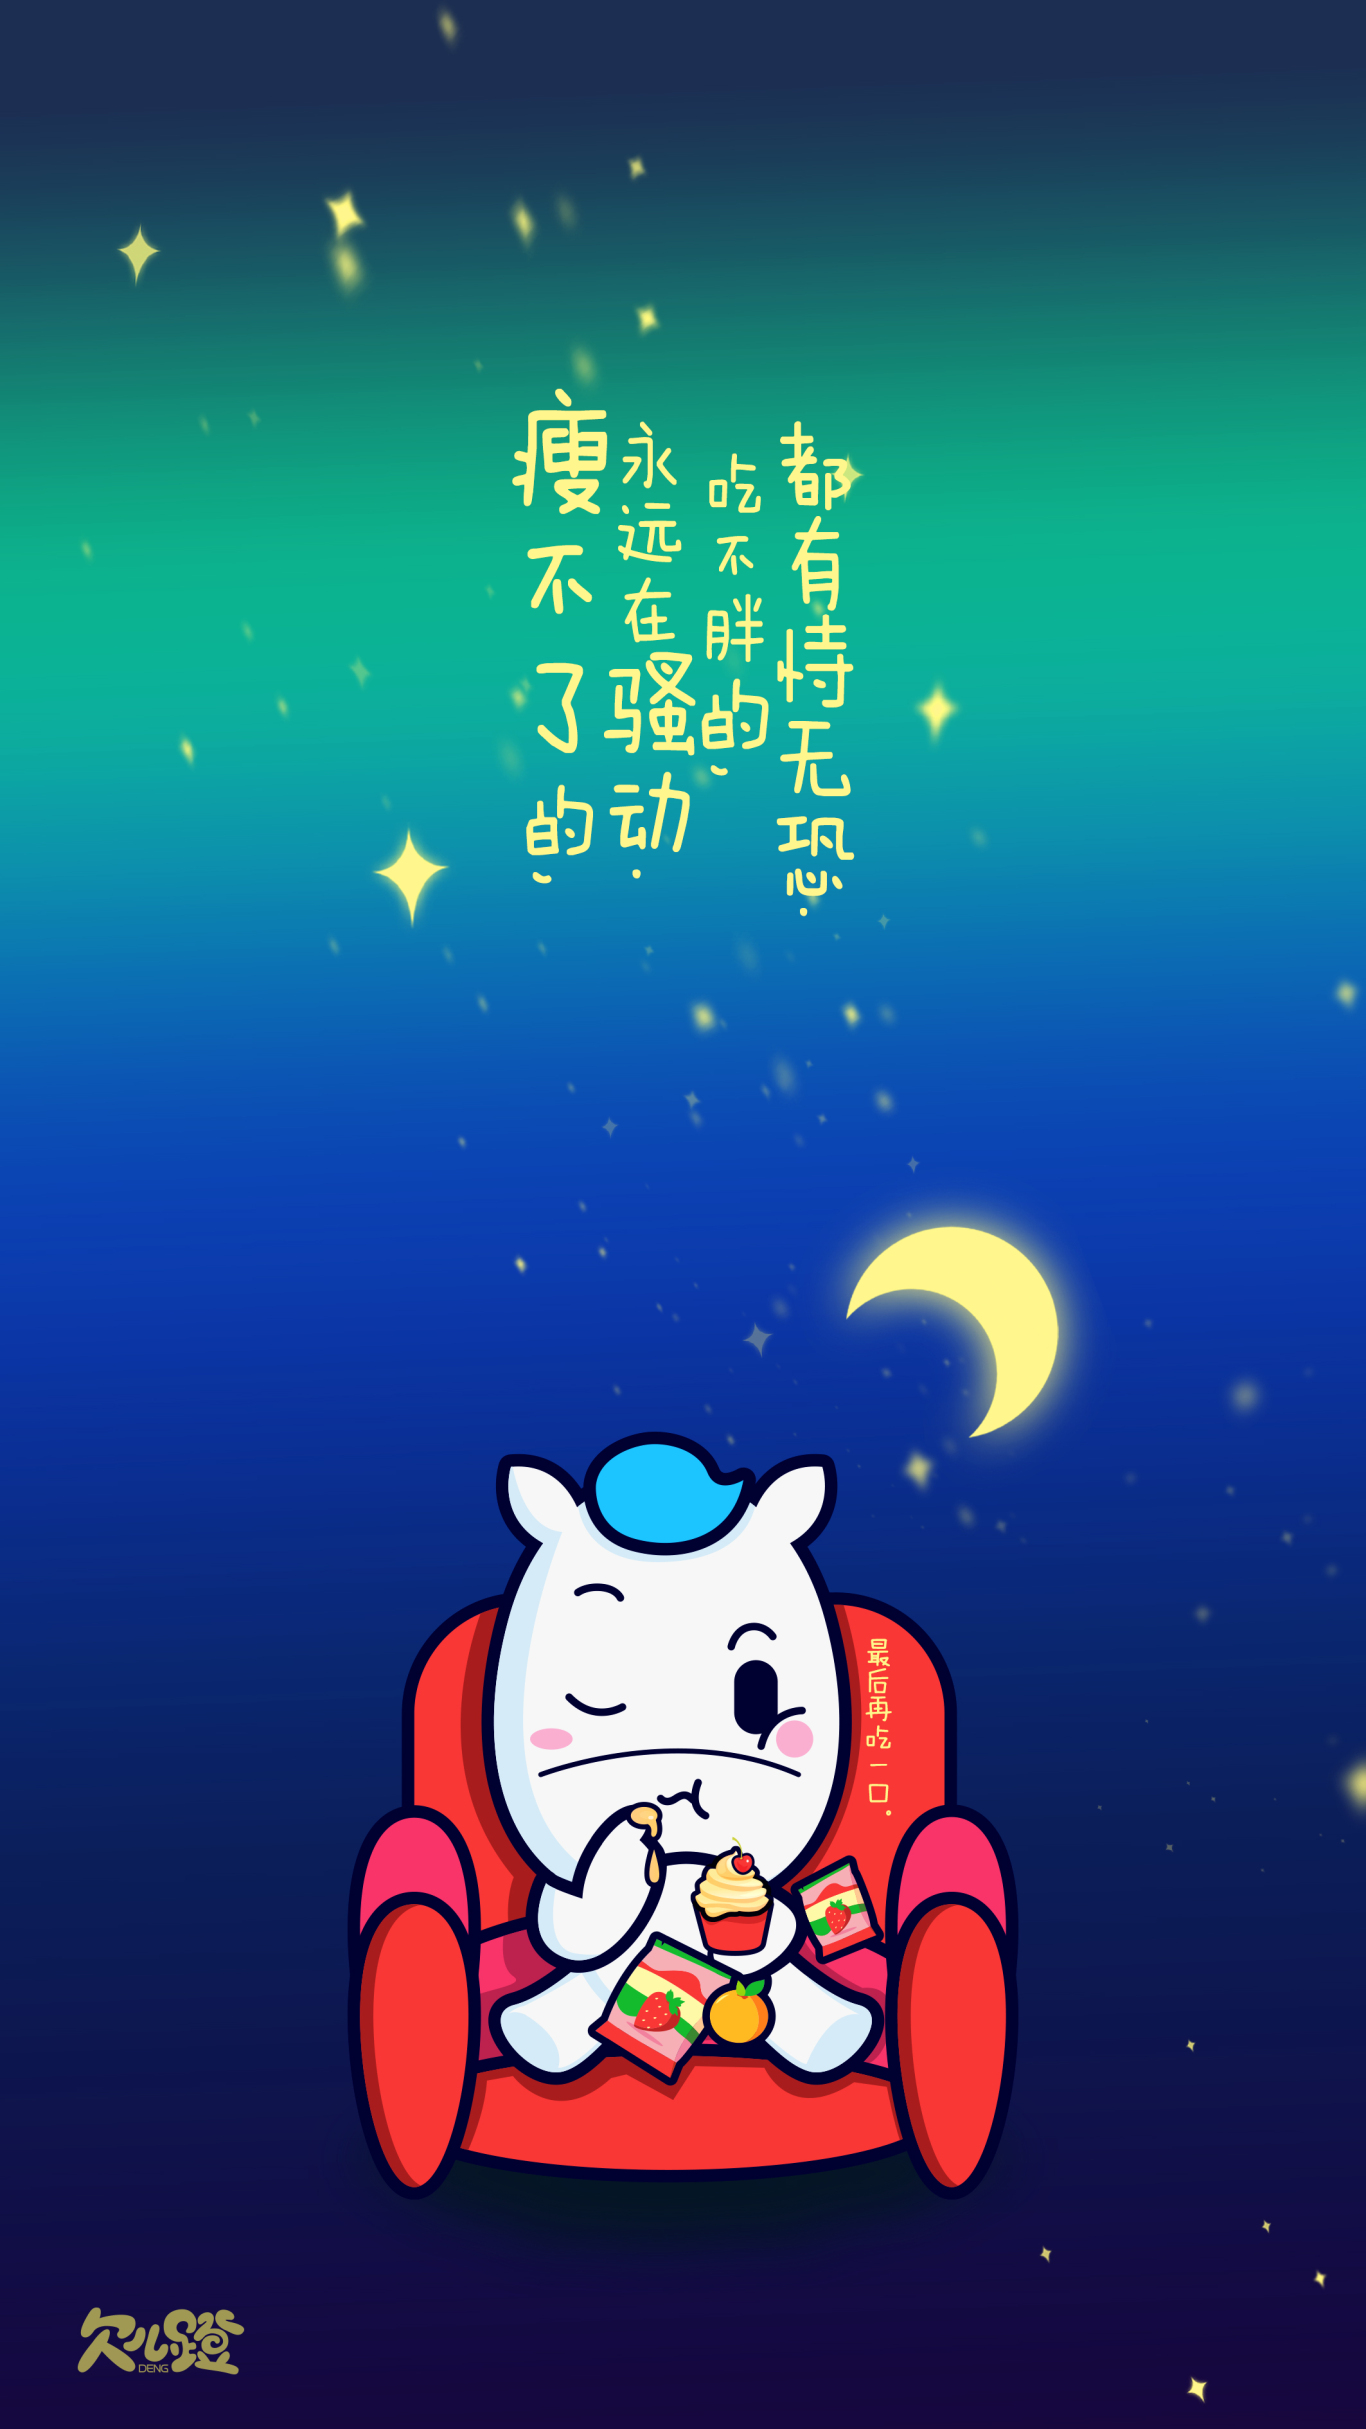 小马Qiandeng卡通形象图27